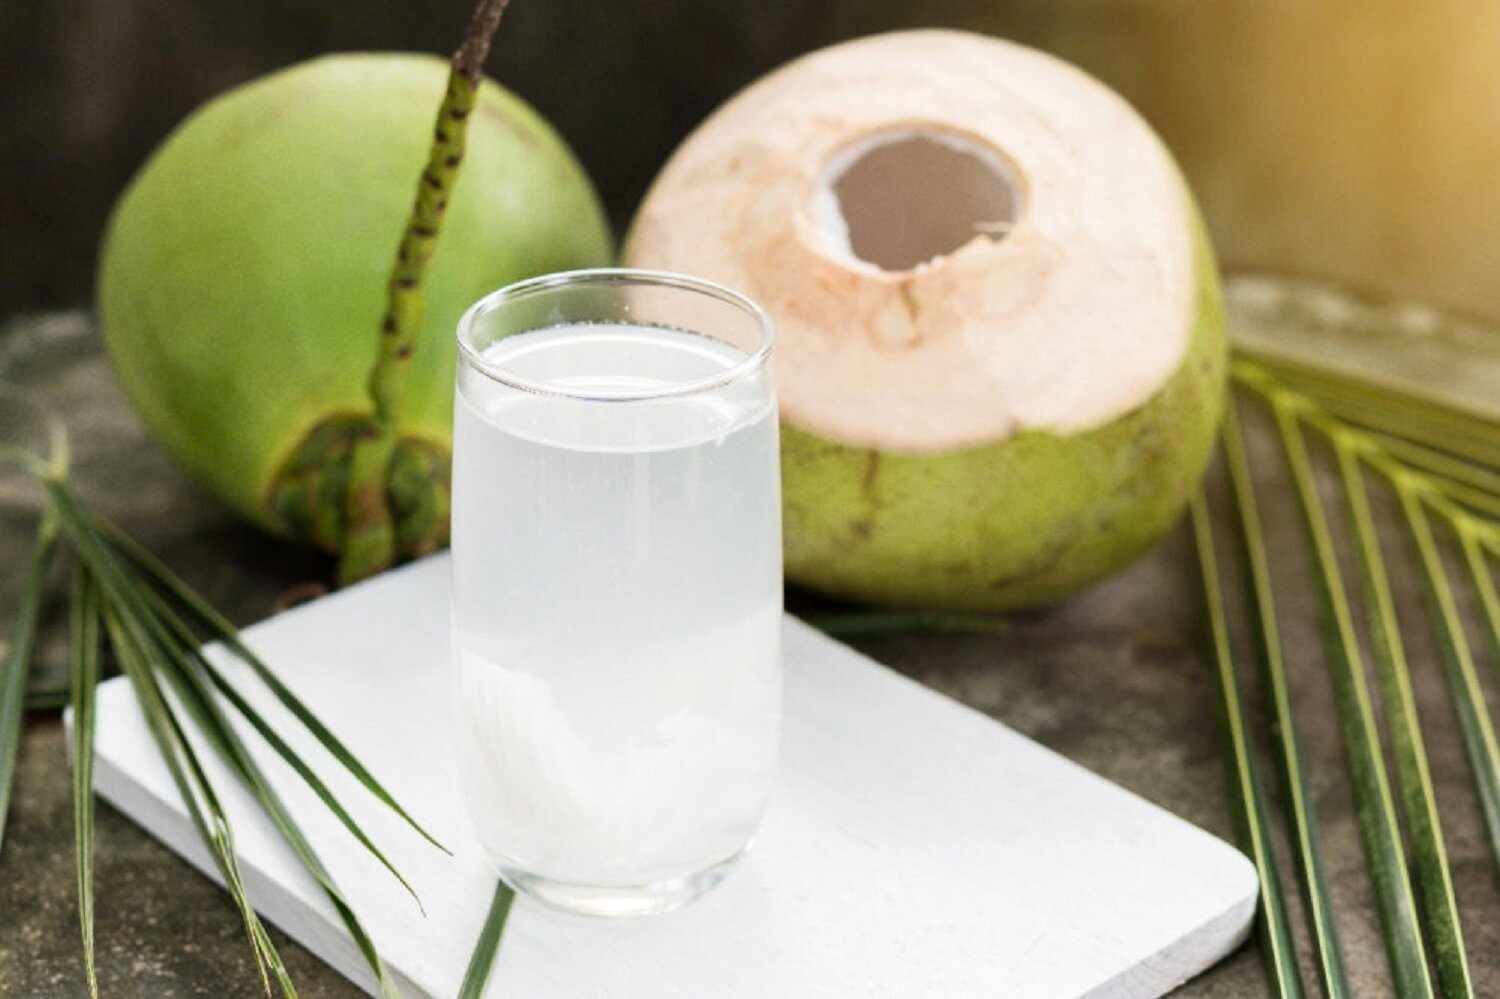 Uống nước dừa trước khi ăn sáng có lợi cho sức khỏe. (Ảnh: Foodbusinessnews)